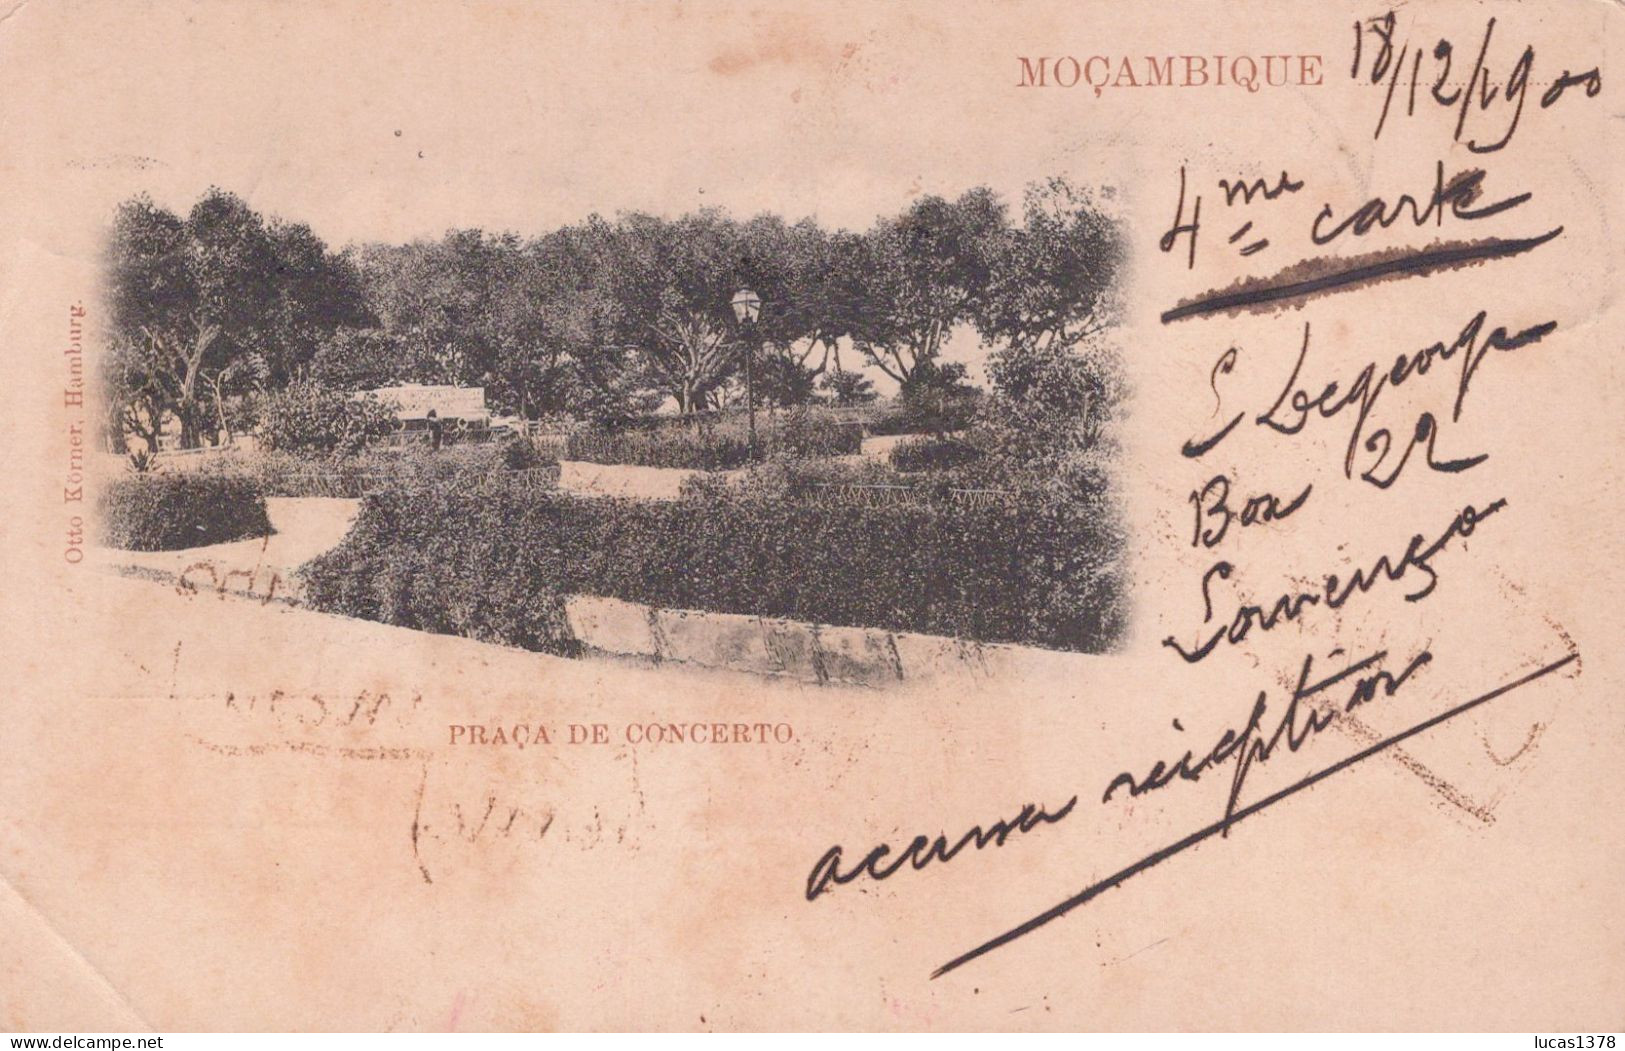 MOCAMBIQUE / MOZAMBIQUE / PRACA DE CONCERTO / DOS NON DIVISE 1903 / BEL AFFRANCHISSEMENT / RARE ++ - Mozambique